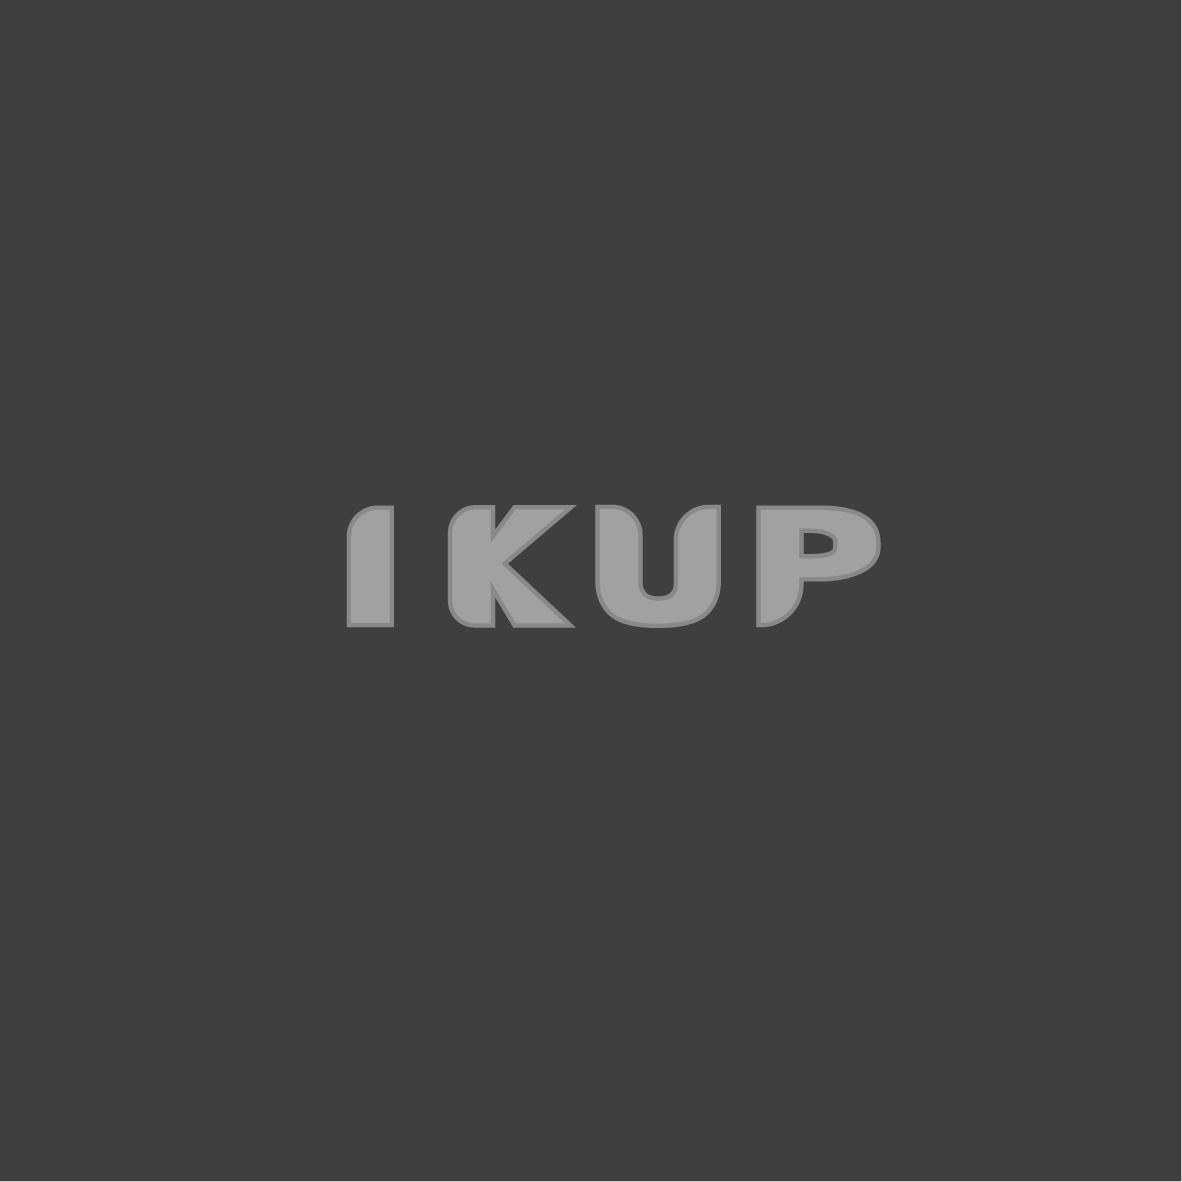 19类-建筑材料IKUP商标转让